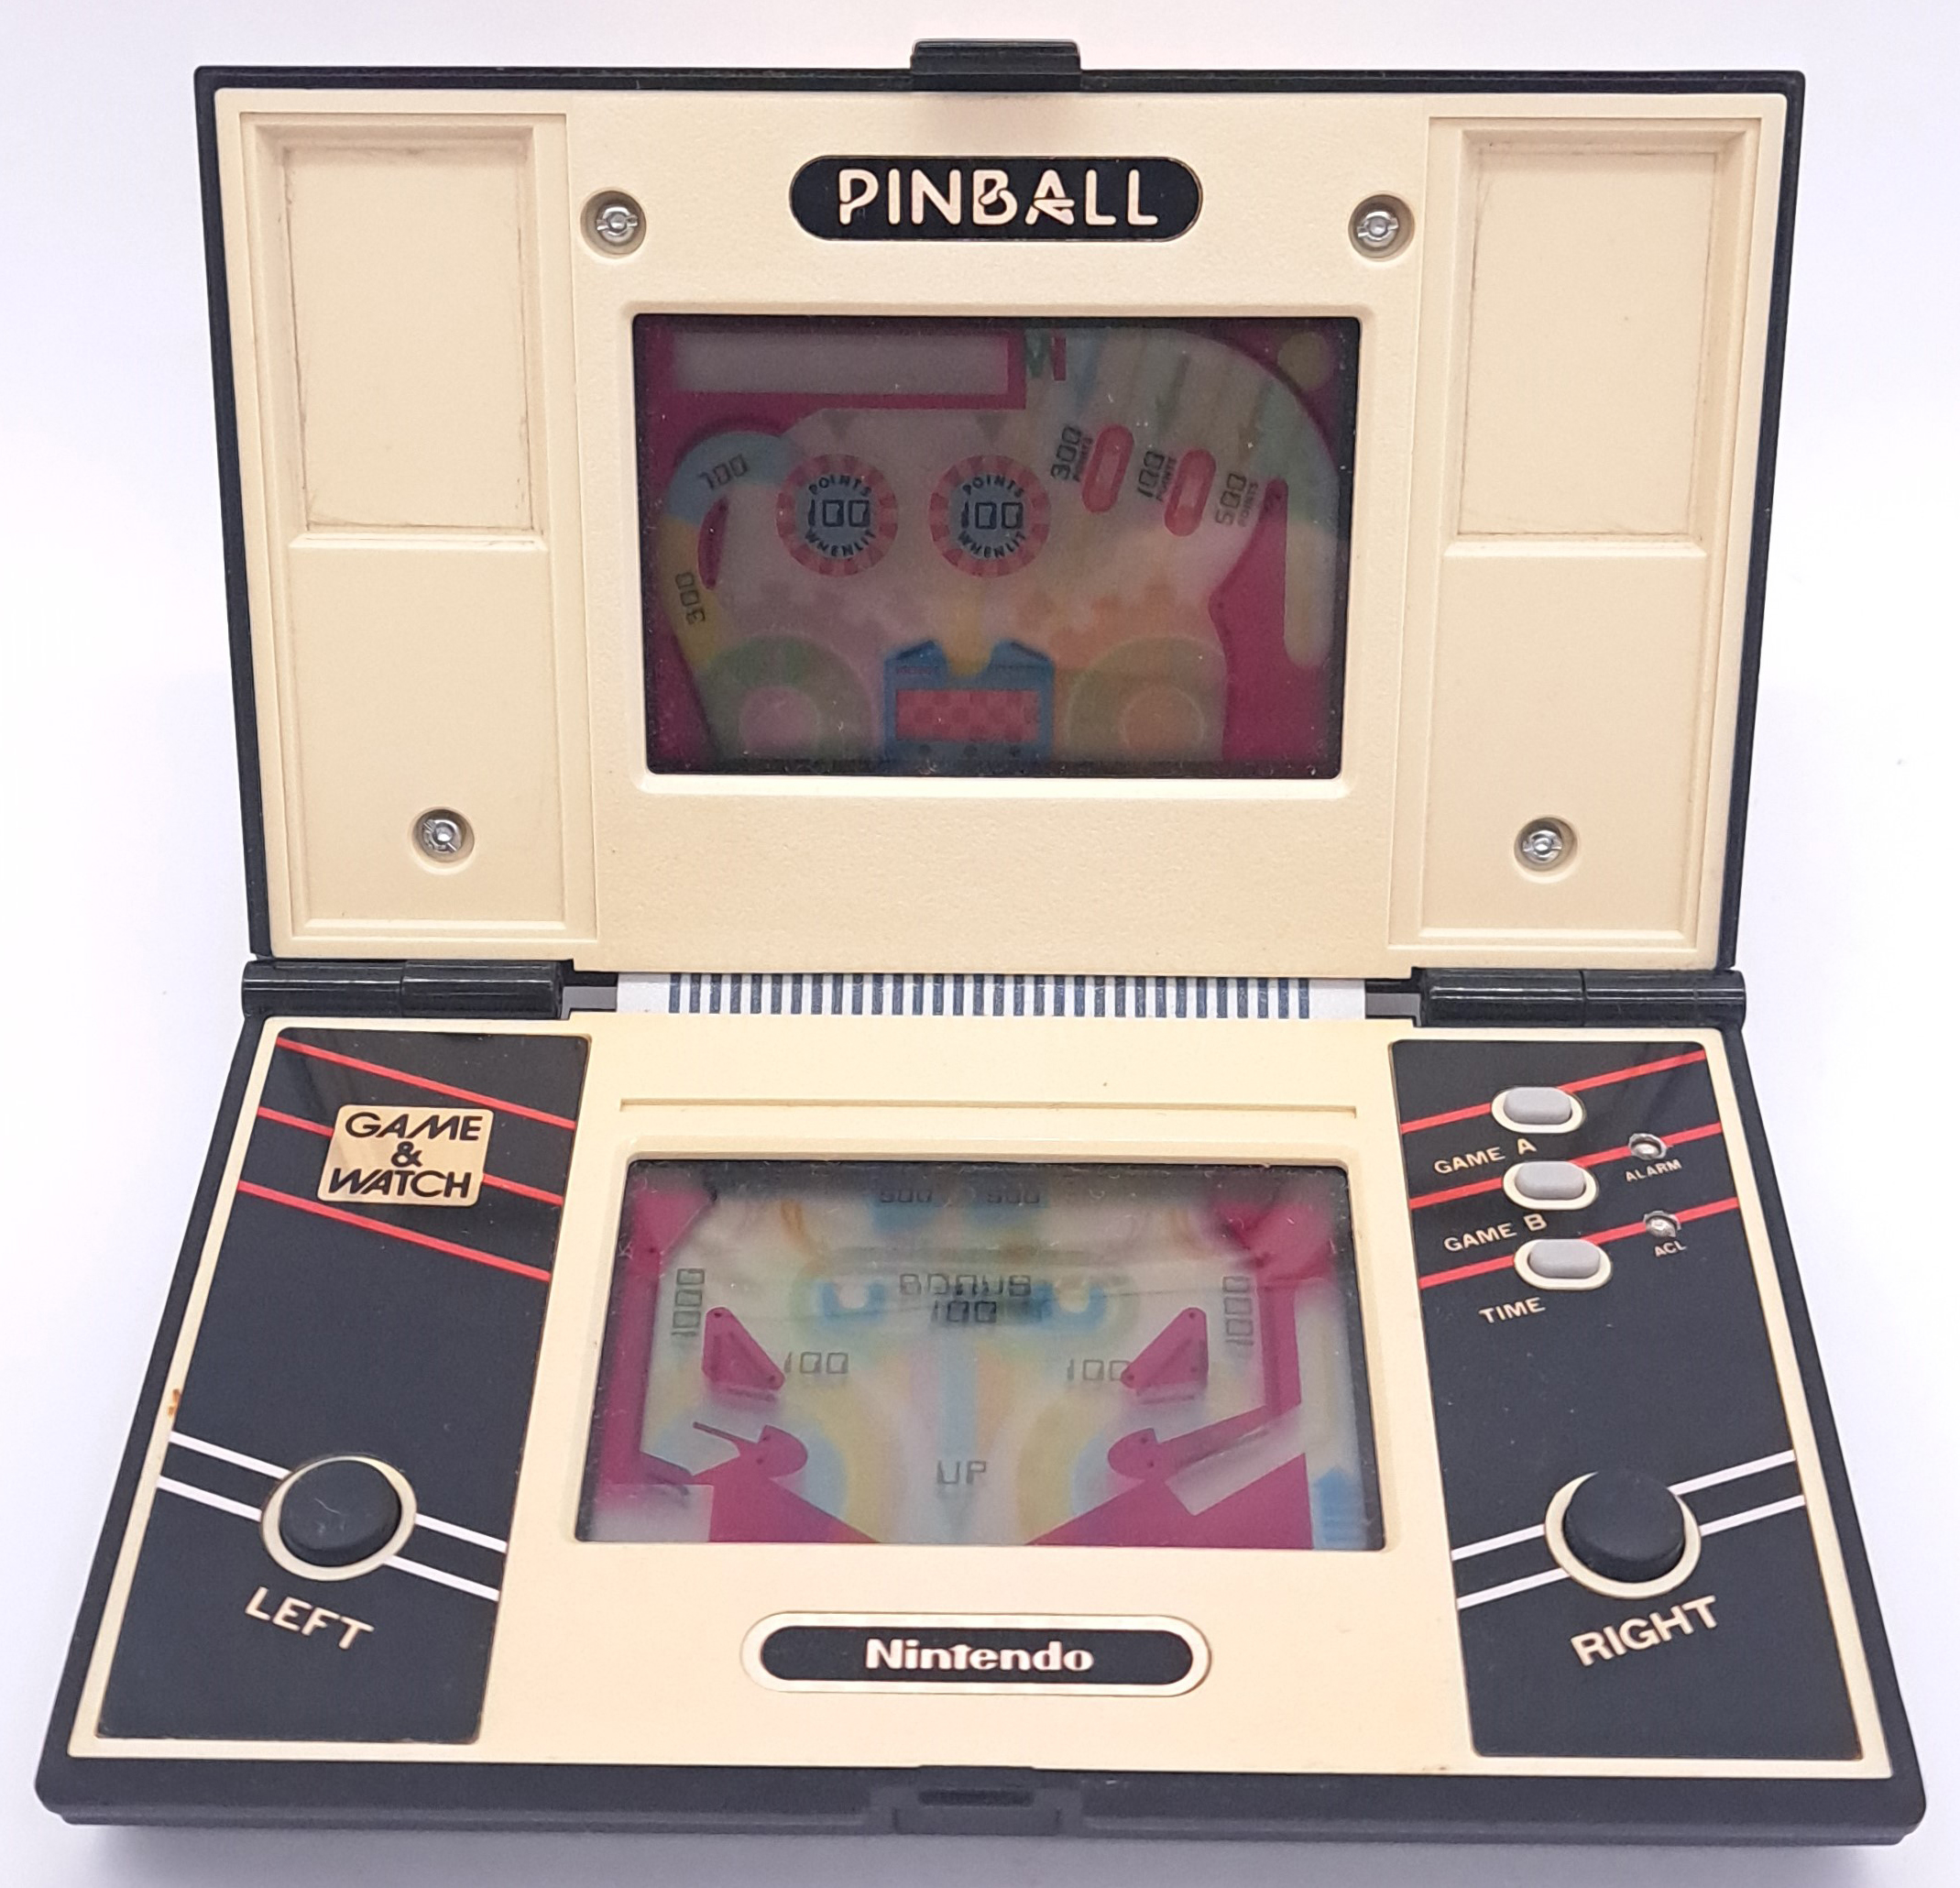 Vintage/Retro Gaming. Nintendo Game & Watch, boxed PB-59 “Pinball” - Image 2 of 12